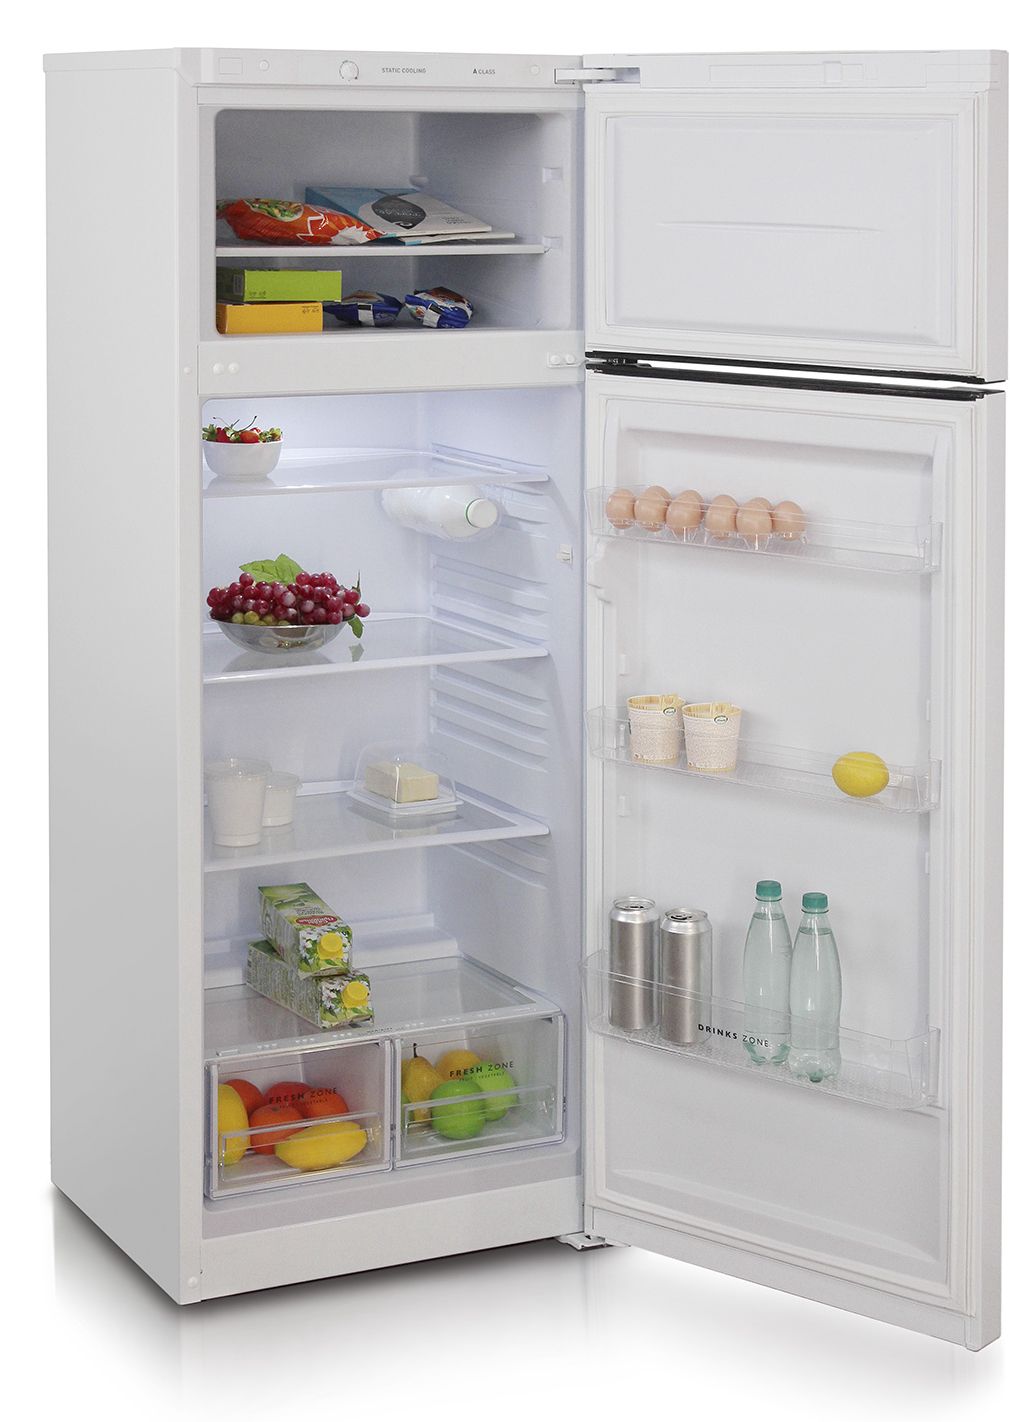 холодильник бирюса 6035, купить в Красноярске холодильник бирюса 6035,  купить в Красноярске дешево холодильник бирюса 6035, купить в Красноярске минимальной цене холодильник бирюса 6035